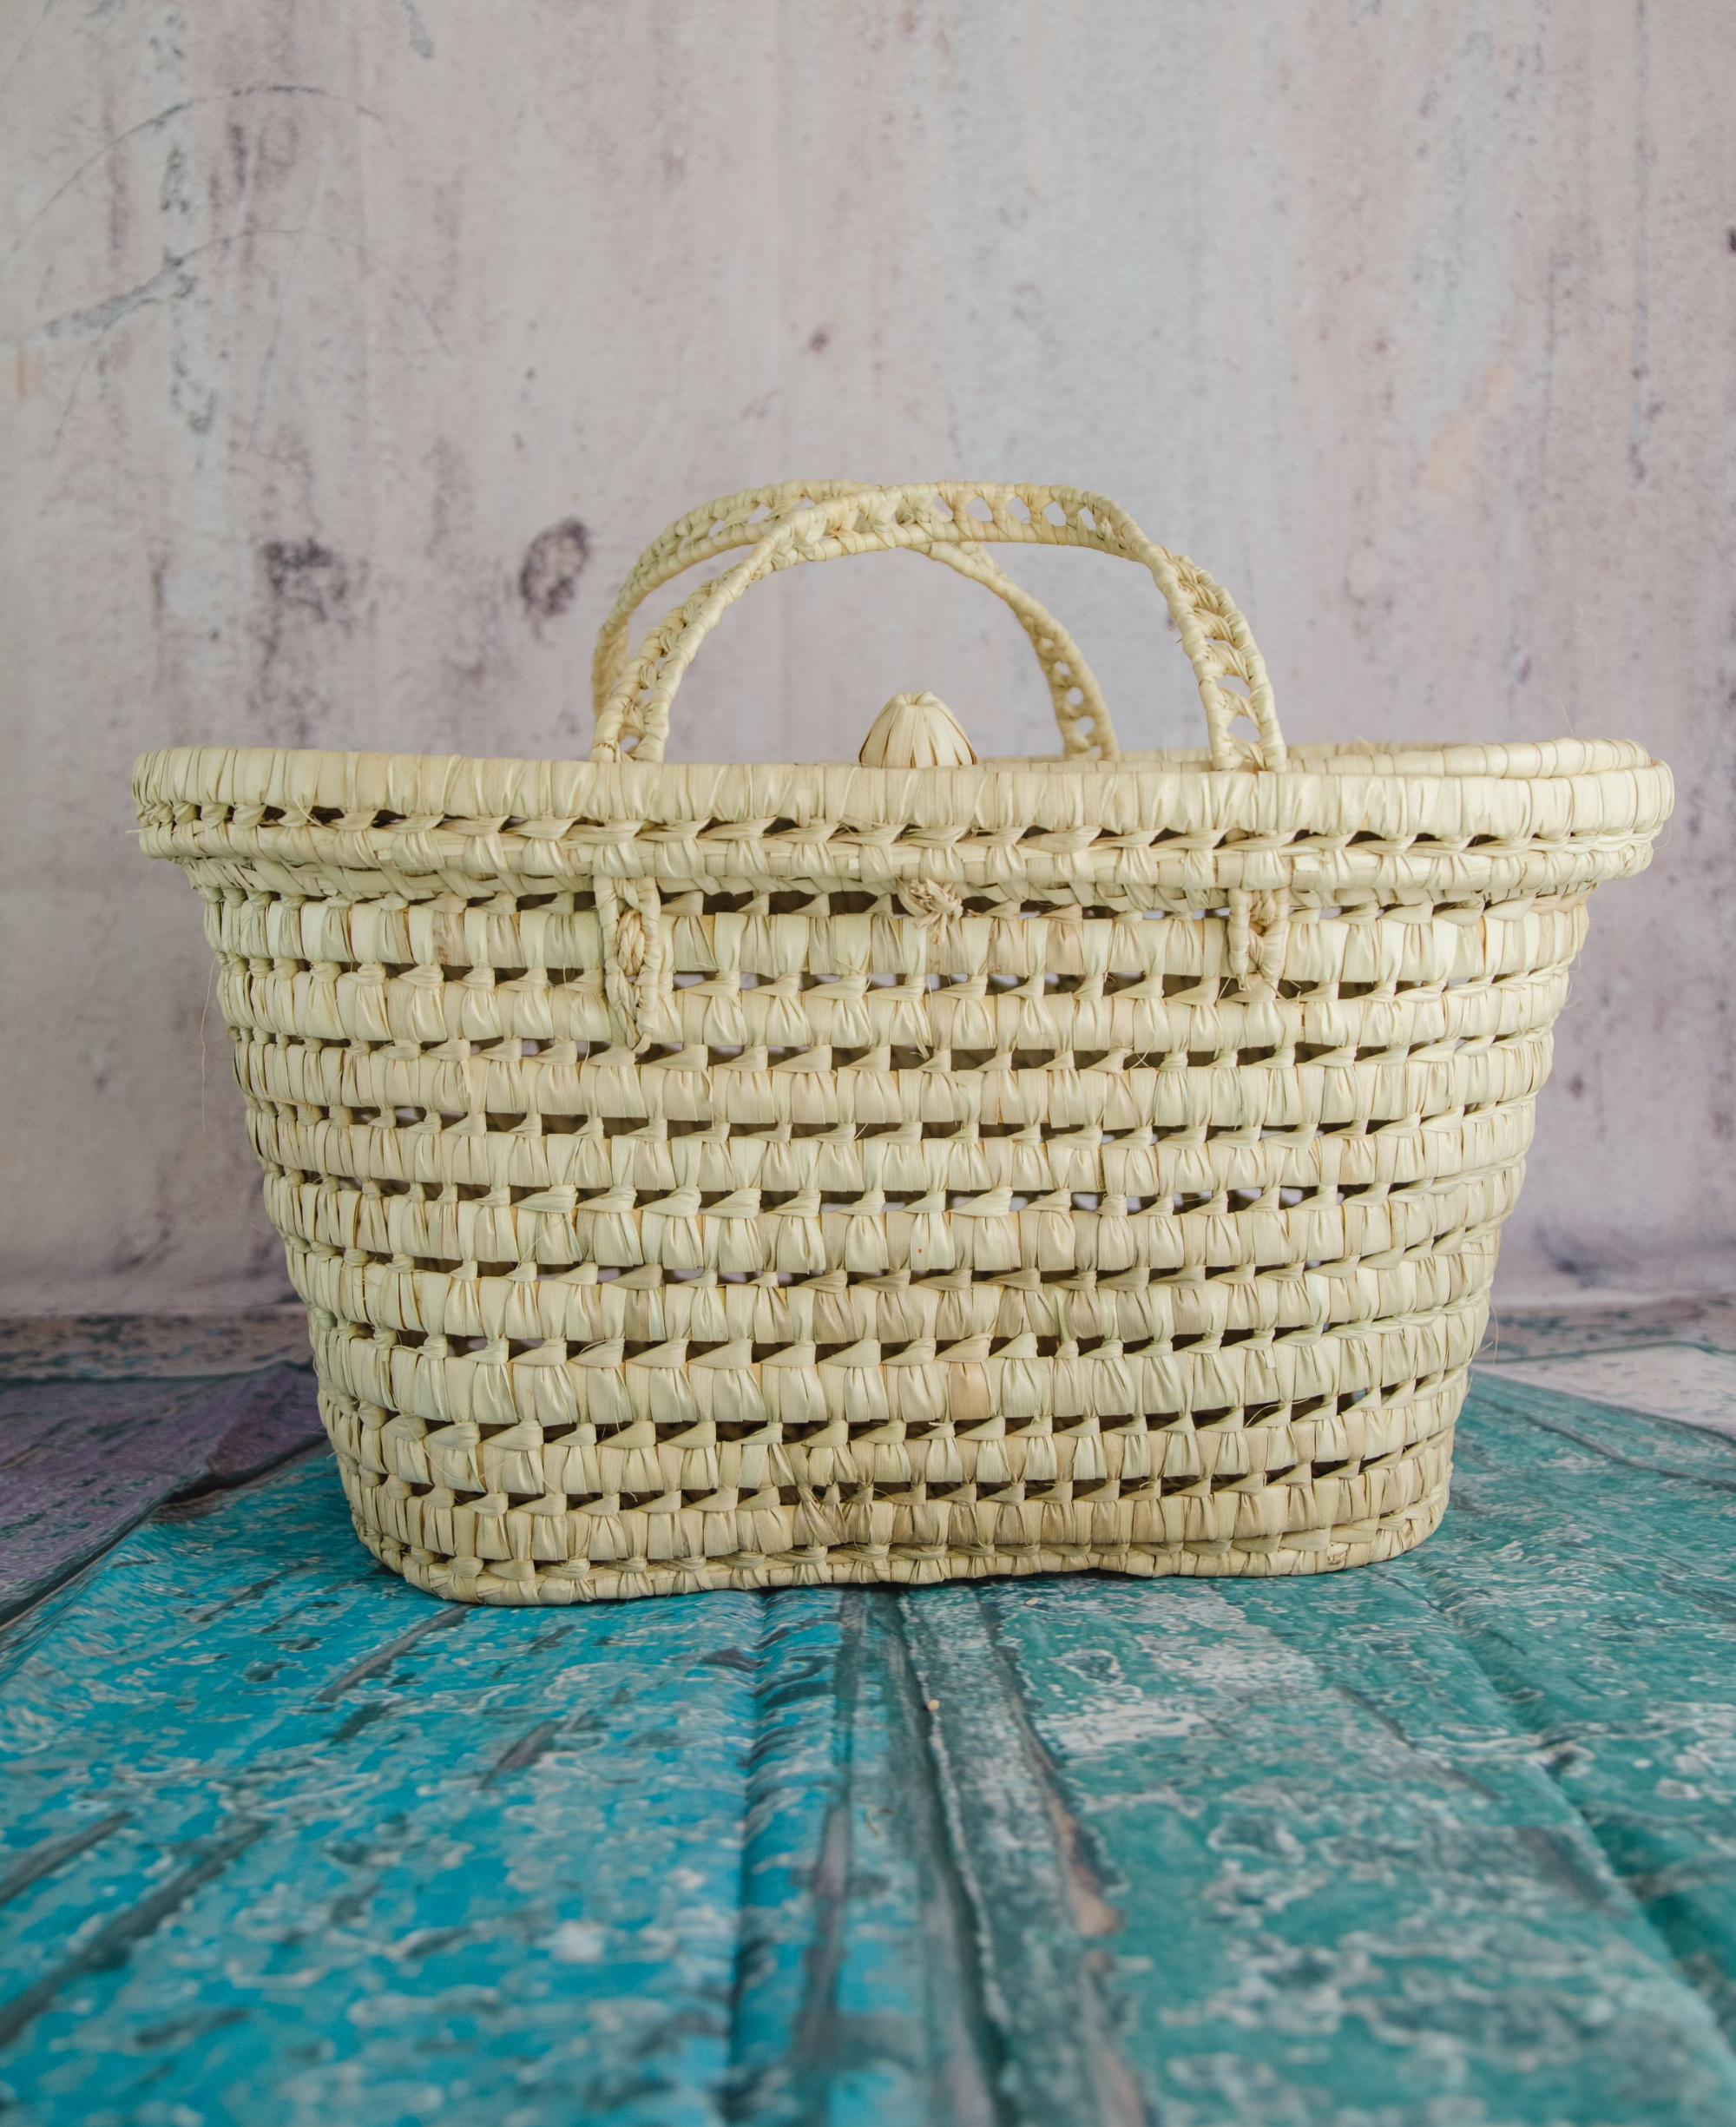 Wicker Storage Trunk Baskets - Palm Leaf Storage Chests - Handmade Rattan Basket Storage